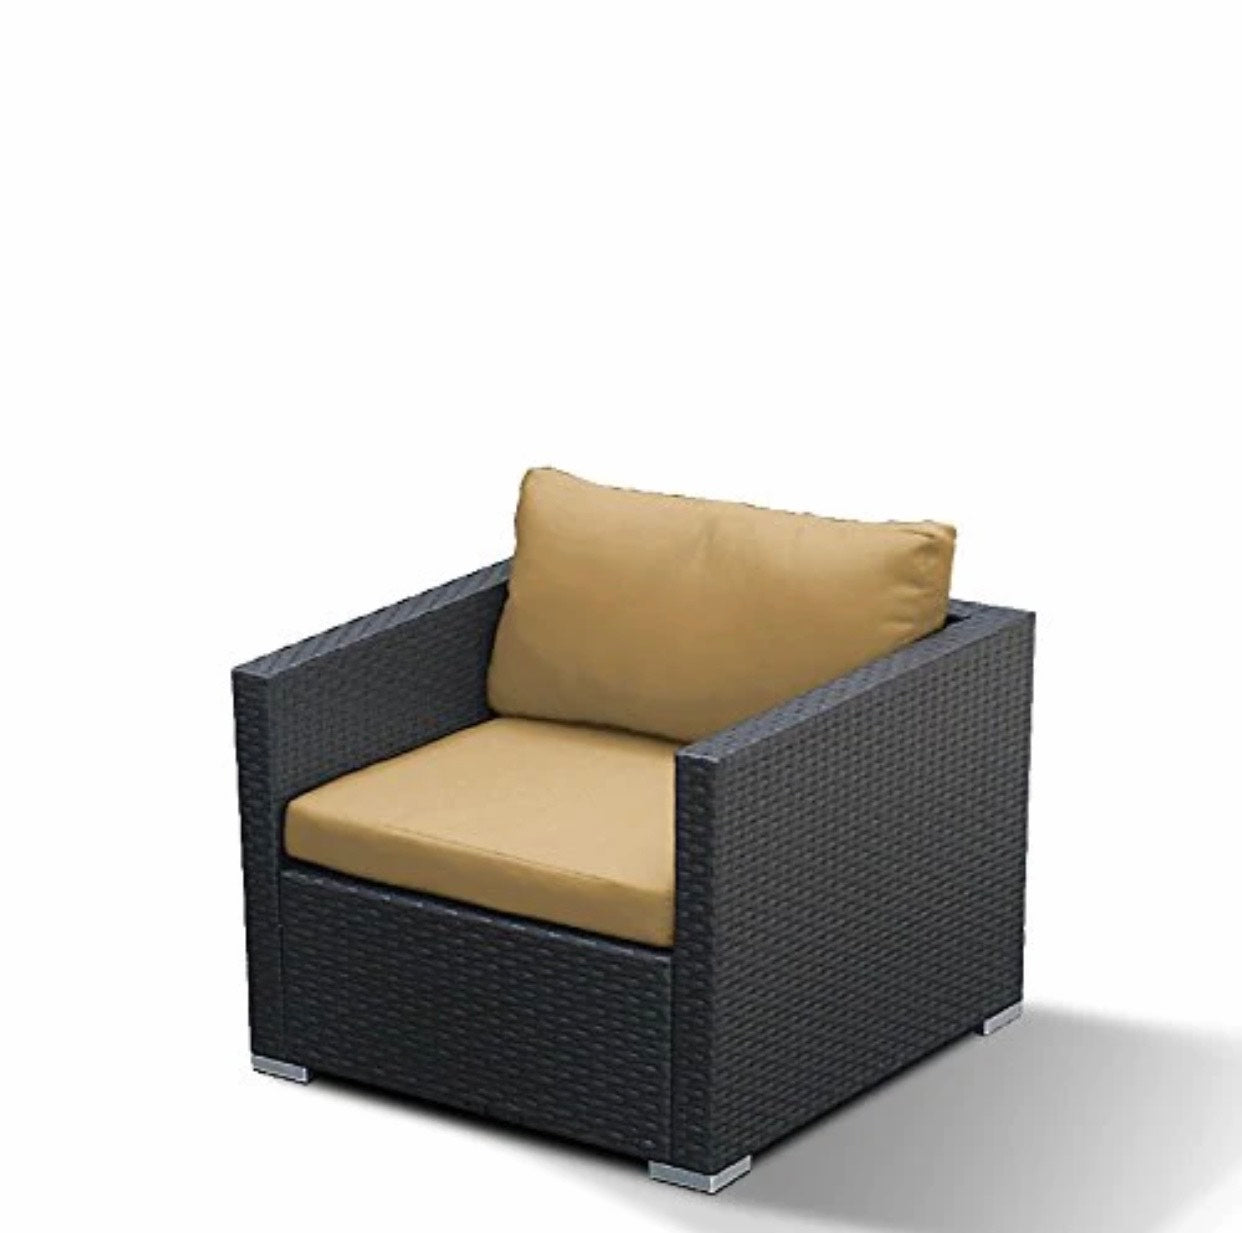 Beige Dark Brown Club Chair Outdoor Patio Furniture Espresso Brown Wicker